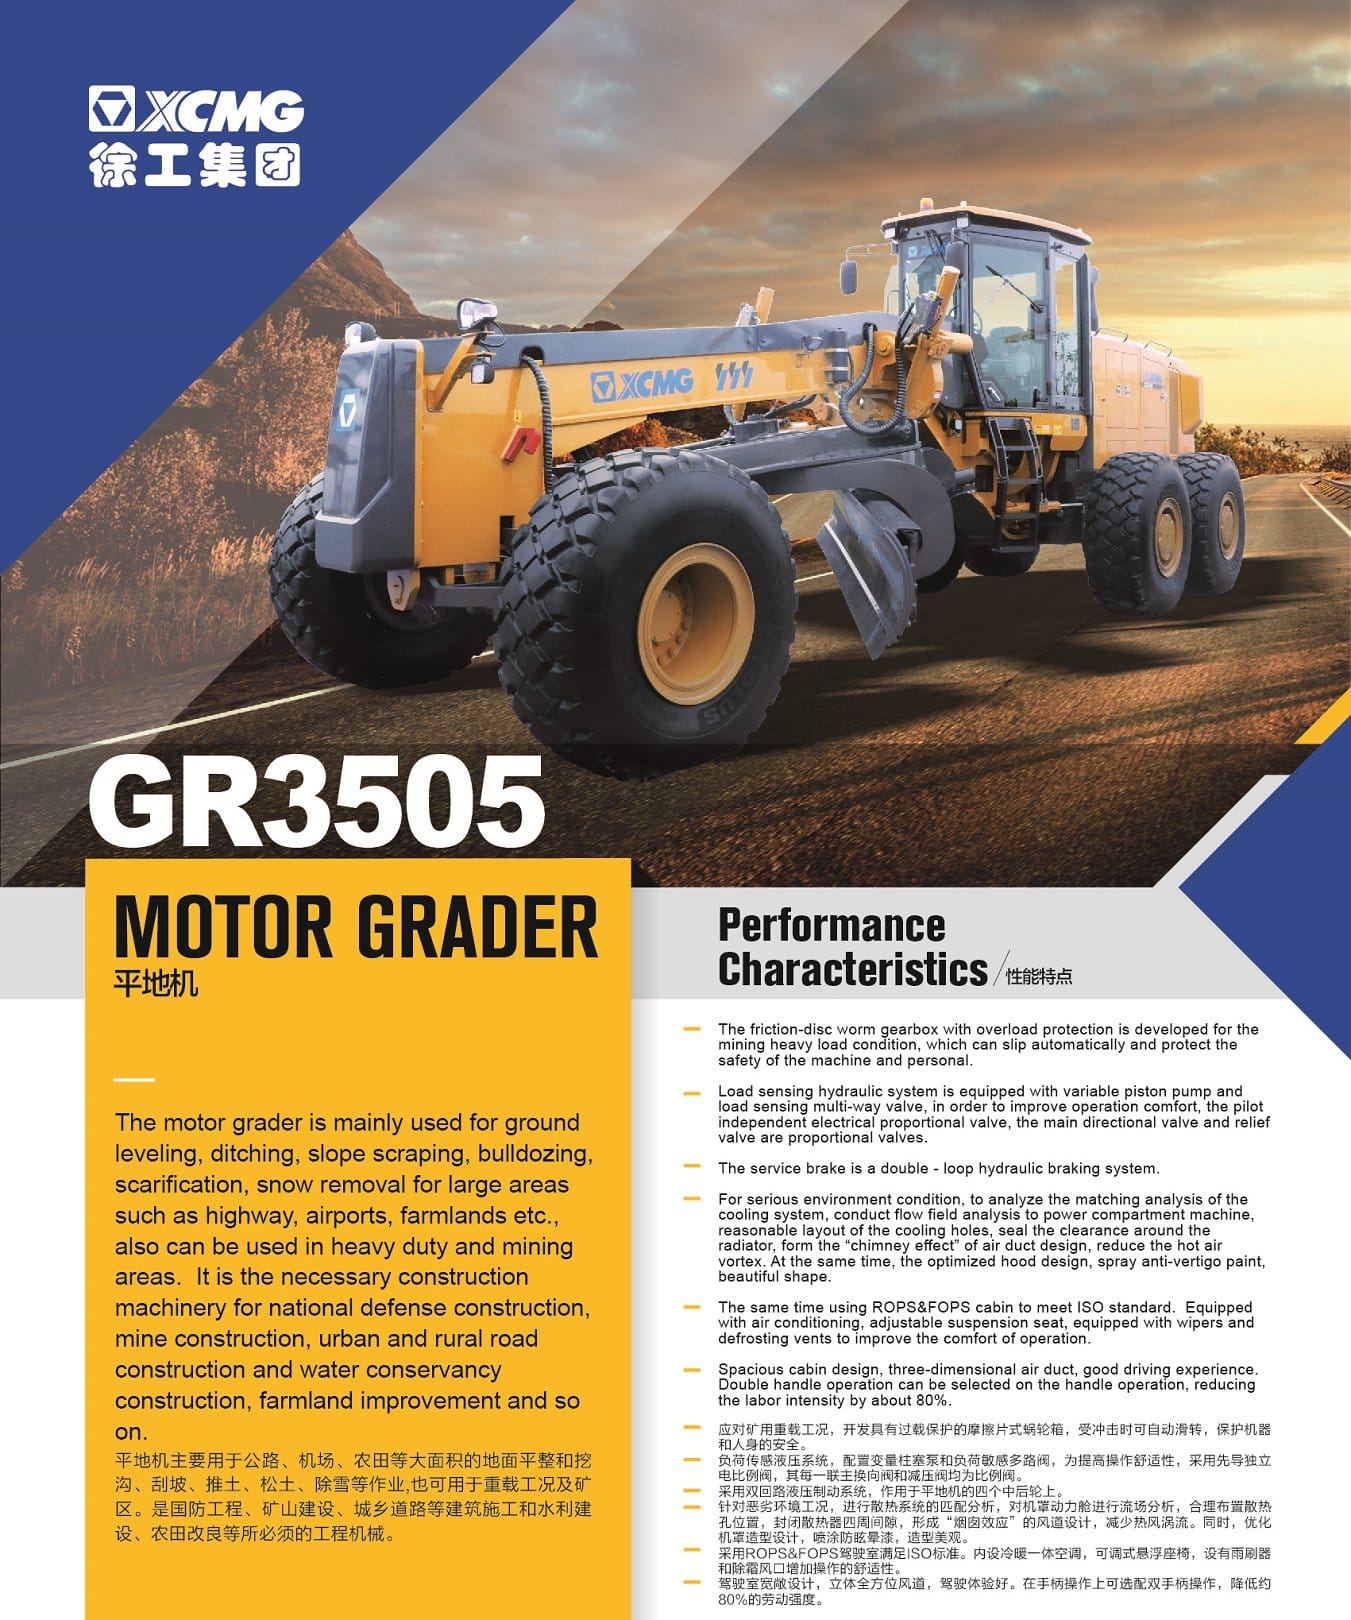 XCMG Official GR3505 Motor Grader for sale